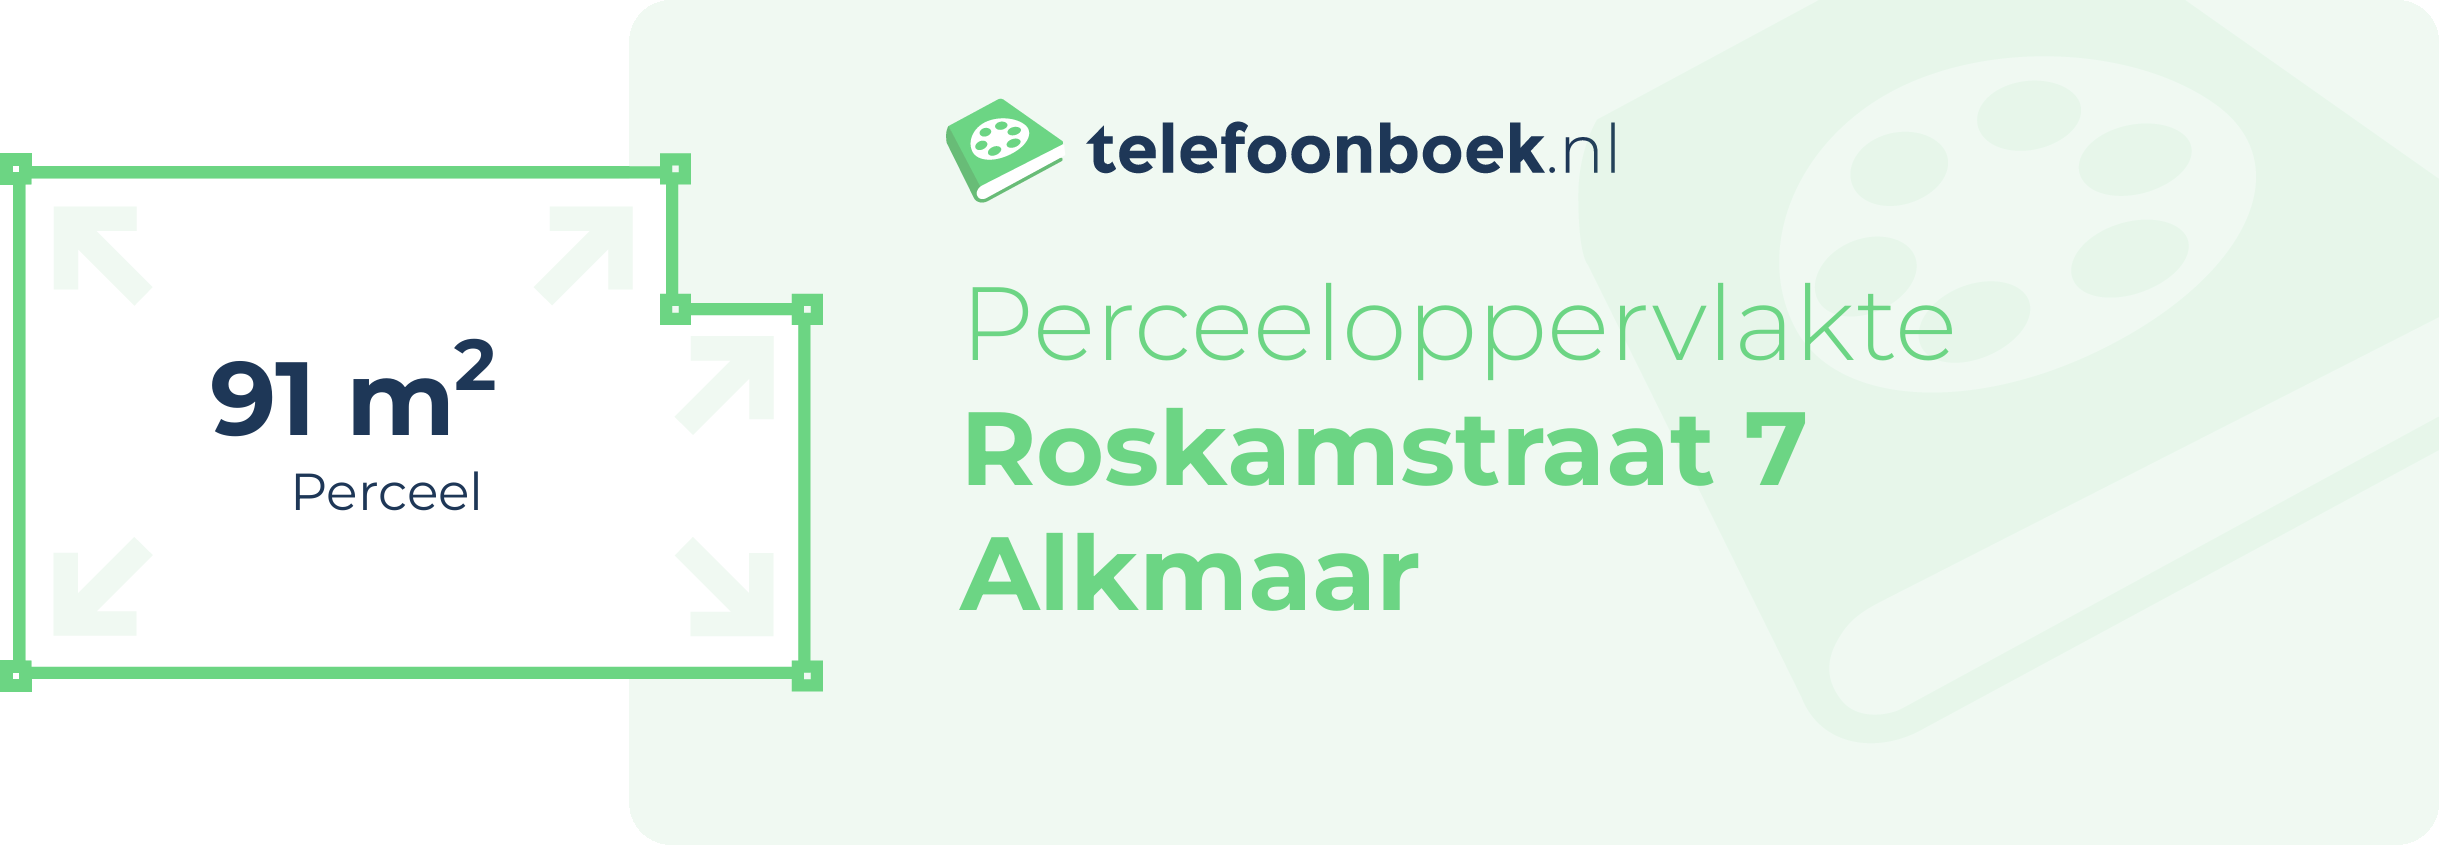 Perceeloppervlakte Roskamstraat 7 Alkmaar